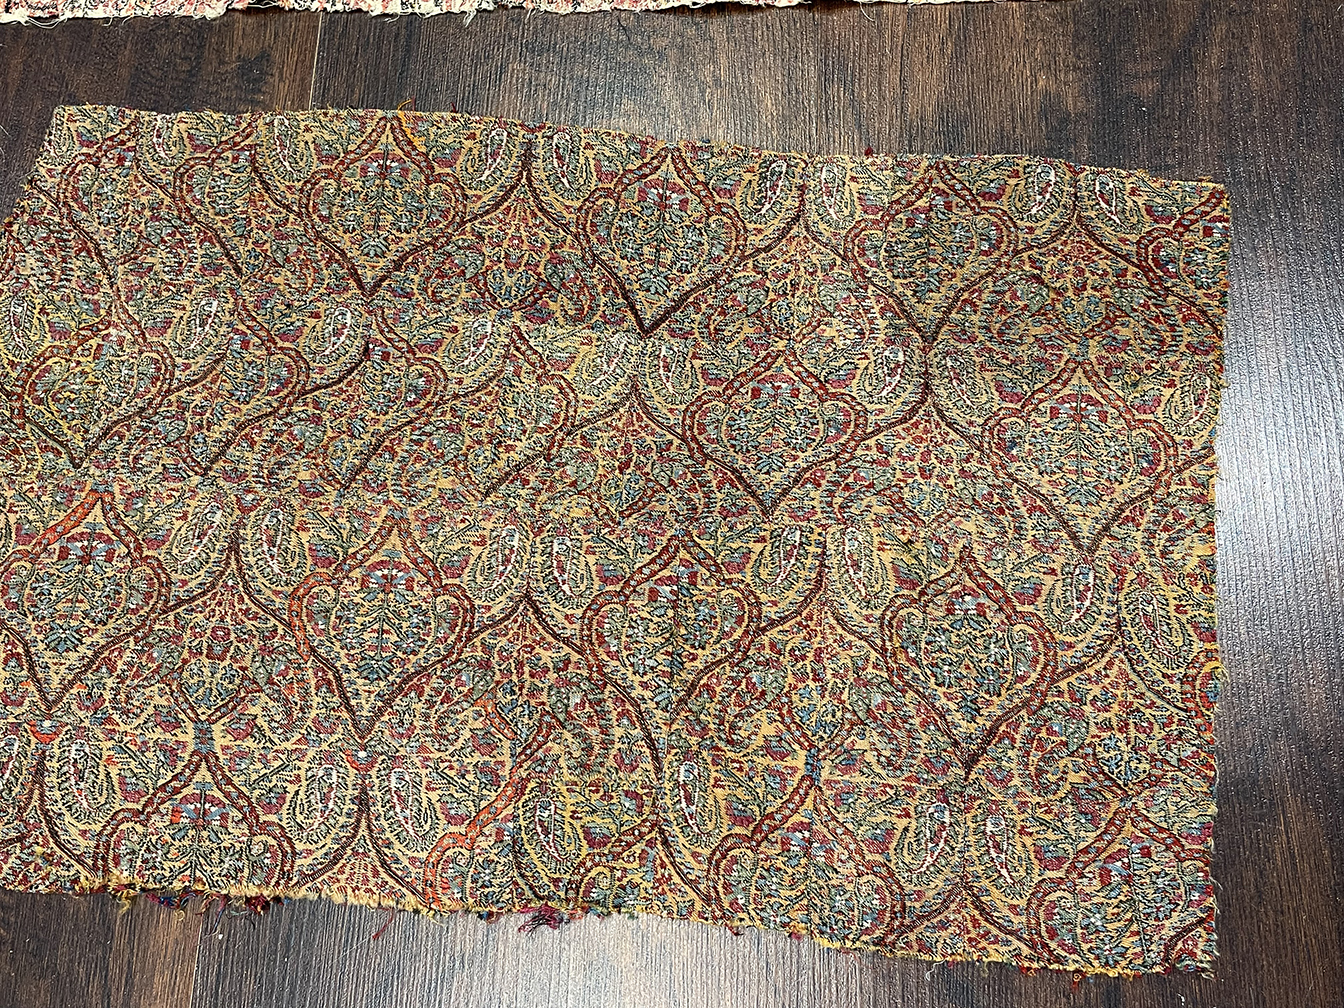 Antique kashmir shawl - # 56600